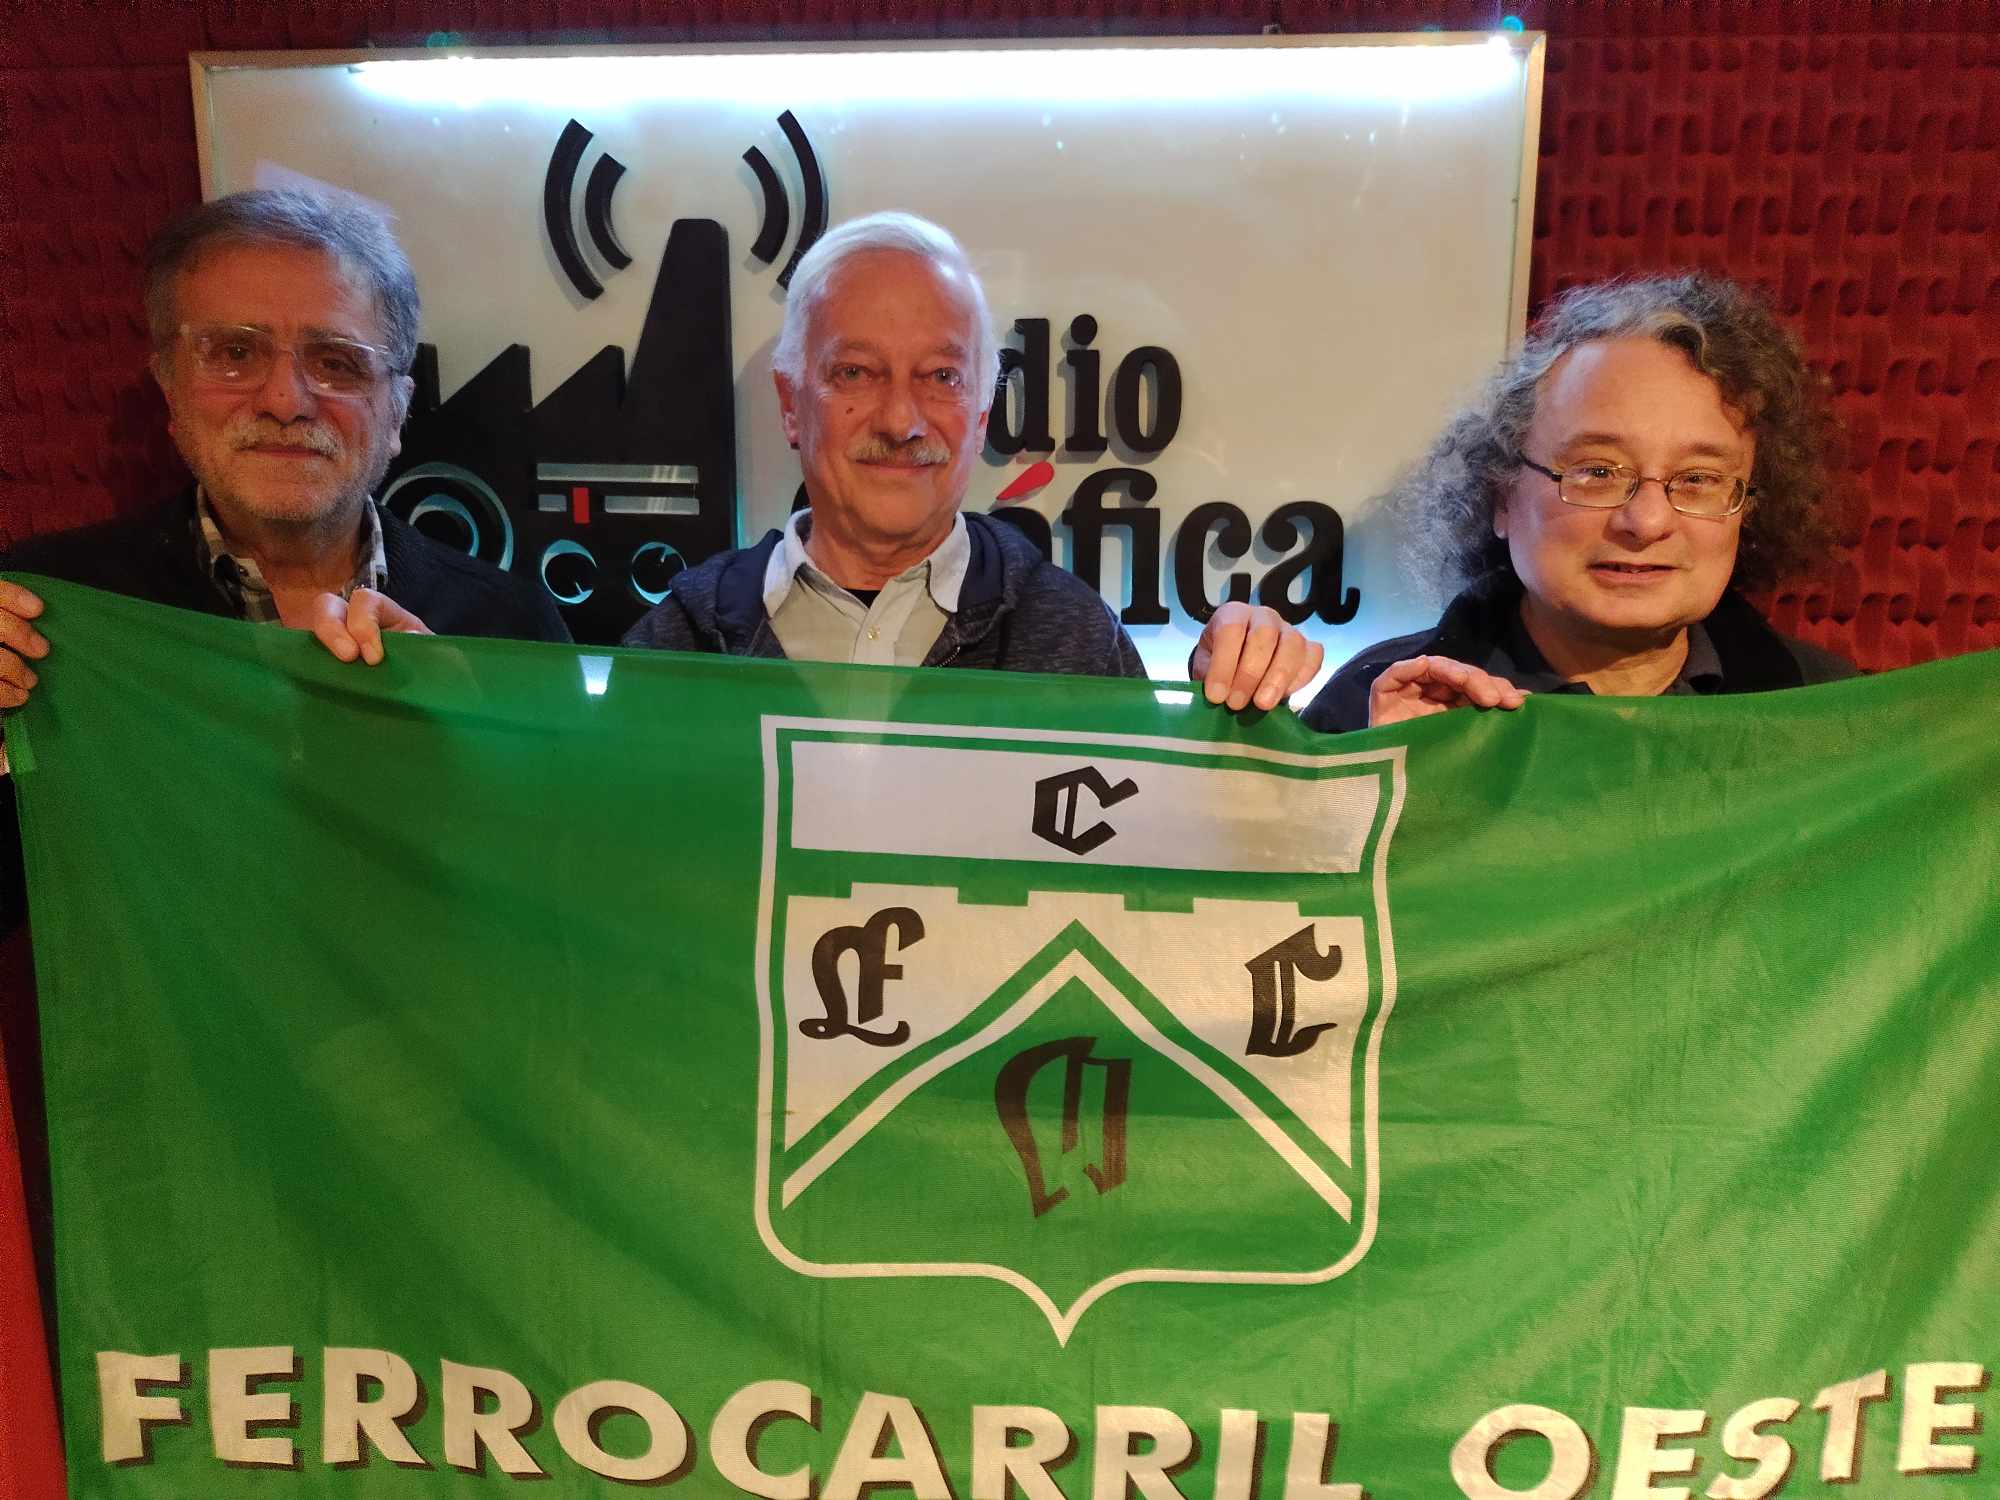 CLUB FERRO CARRIL OESTE ¨La Historia¨ - TirandoDATA con Walter